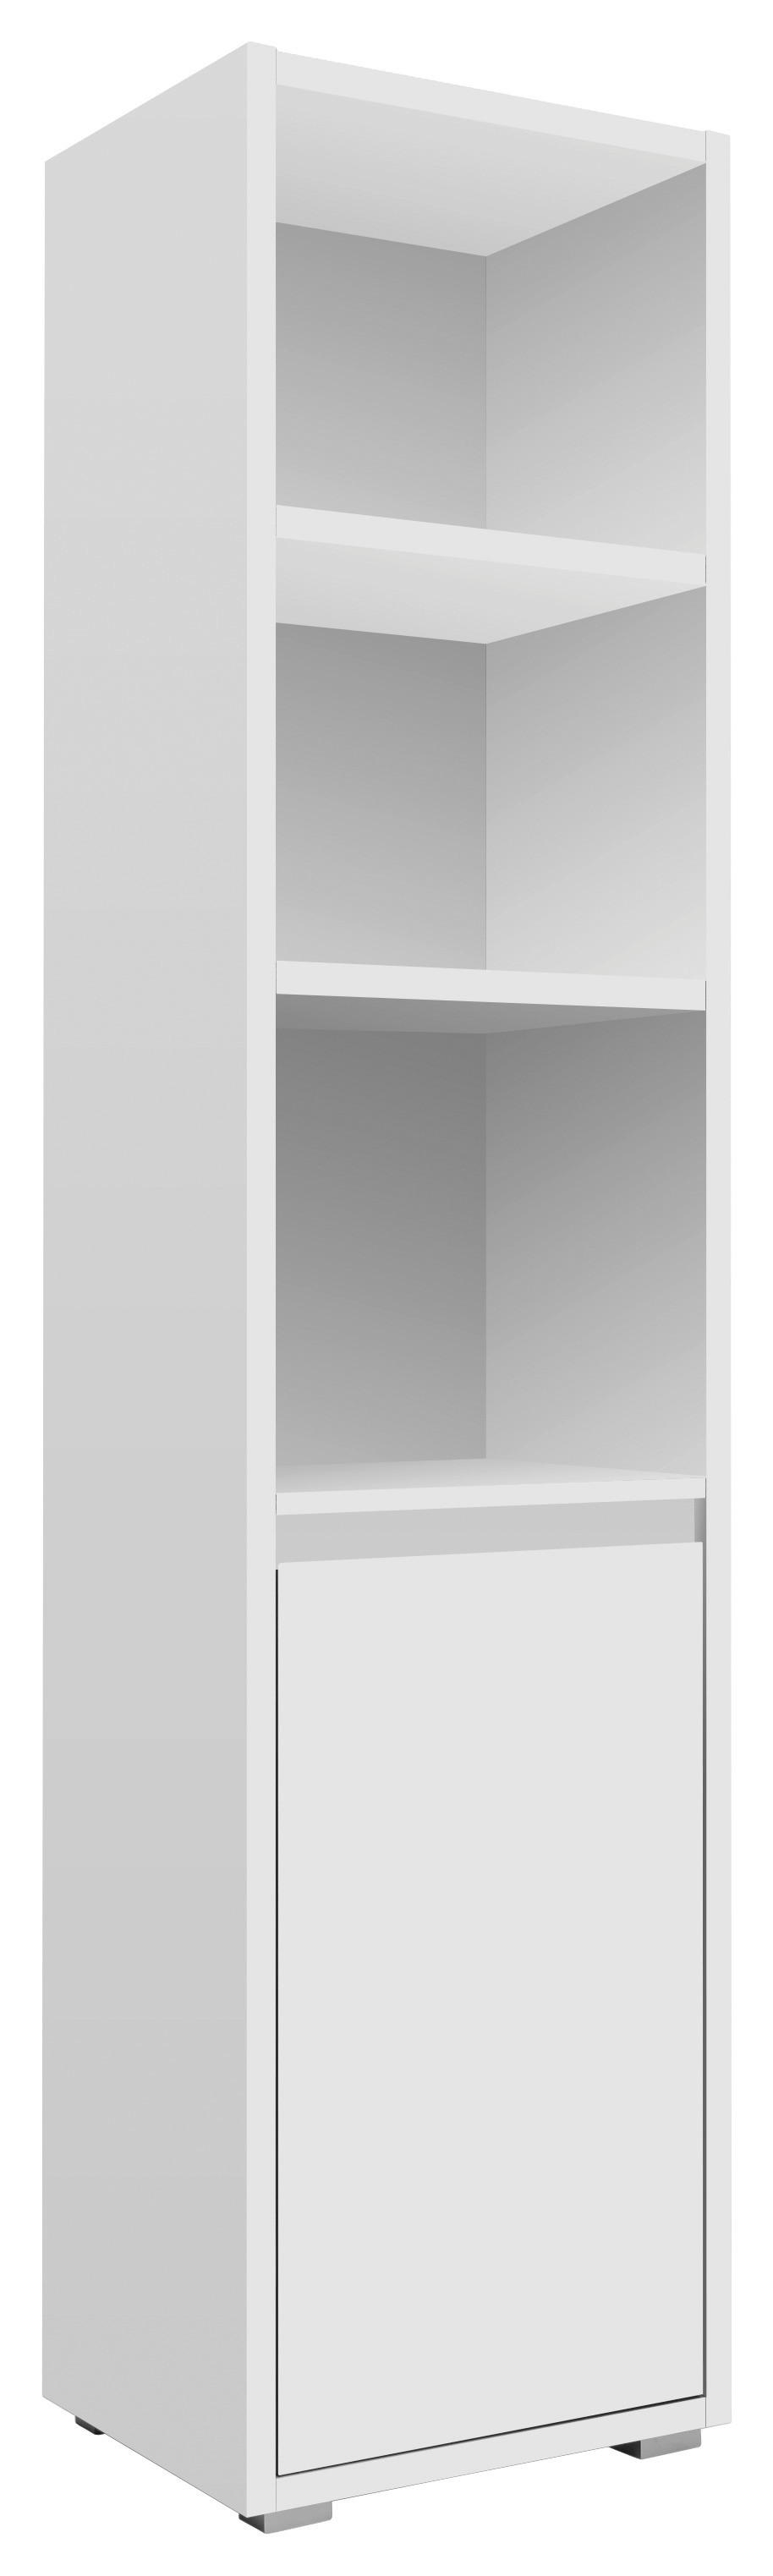 REGALELEMENT Weiß  - Silberfarben/Weiß, Basics, Holzwerkstoff/Kunststoff (45/191/37cm) - MID.YOU